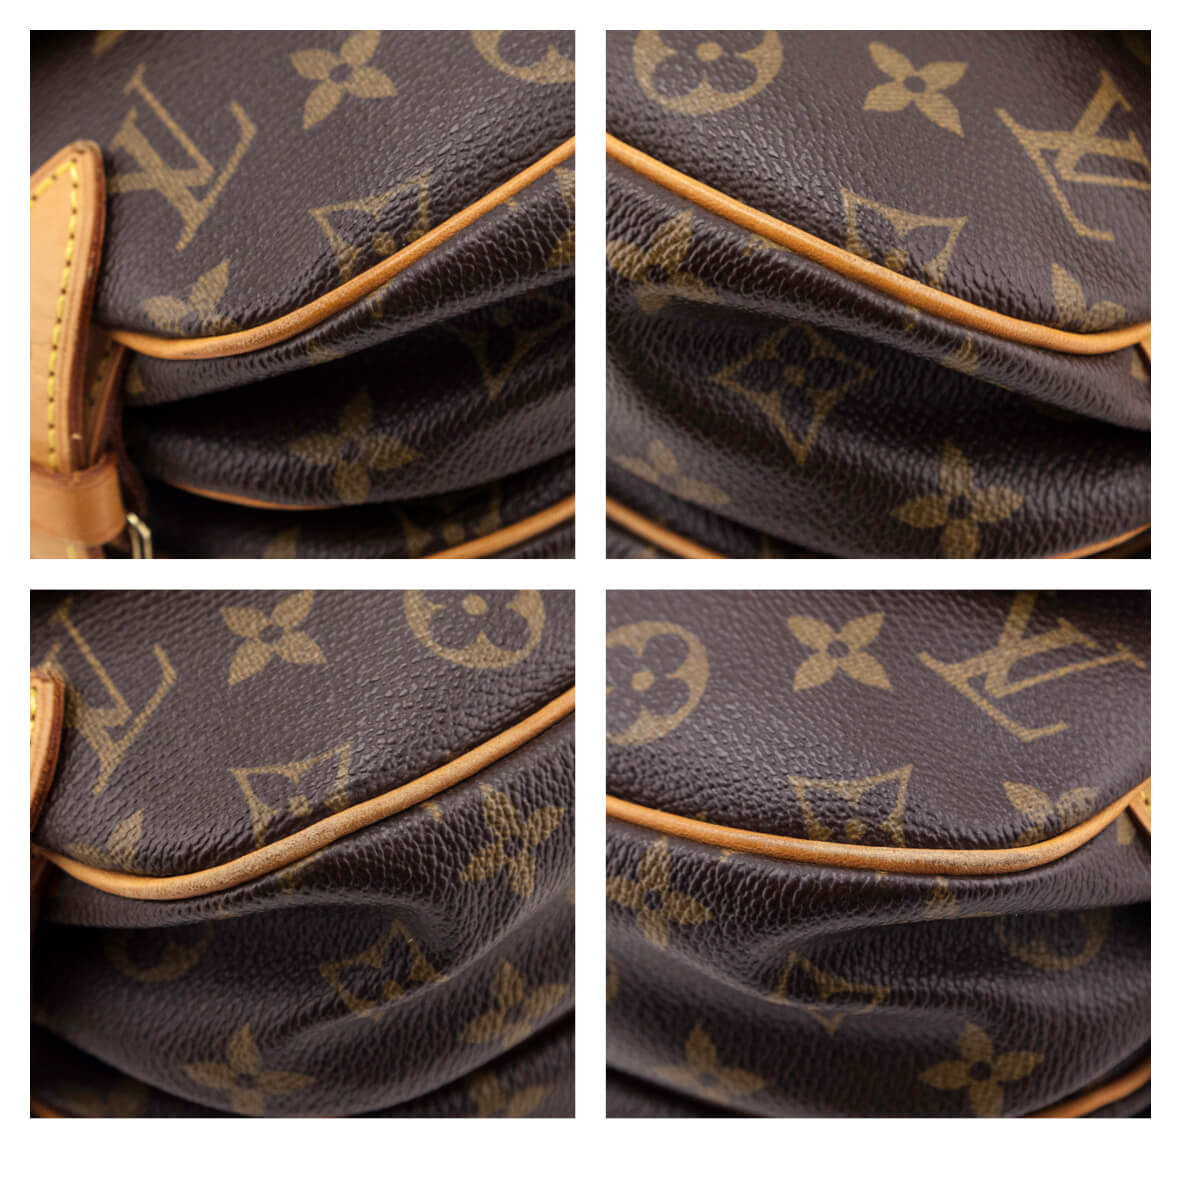 Authentic Vintage Louis Vuitton Saumur 30 Monogram – SergiosCollection